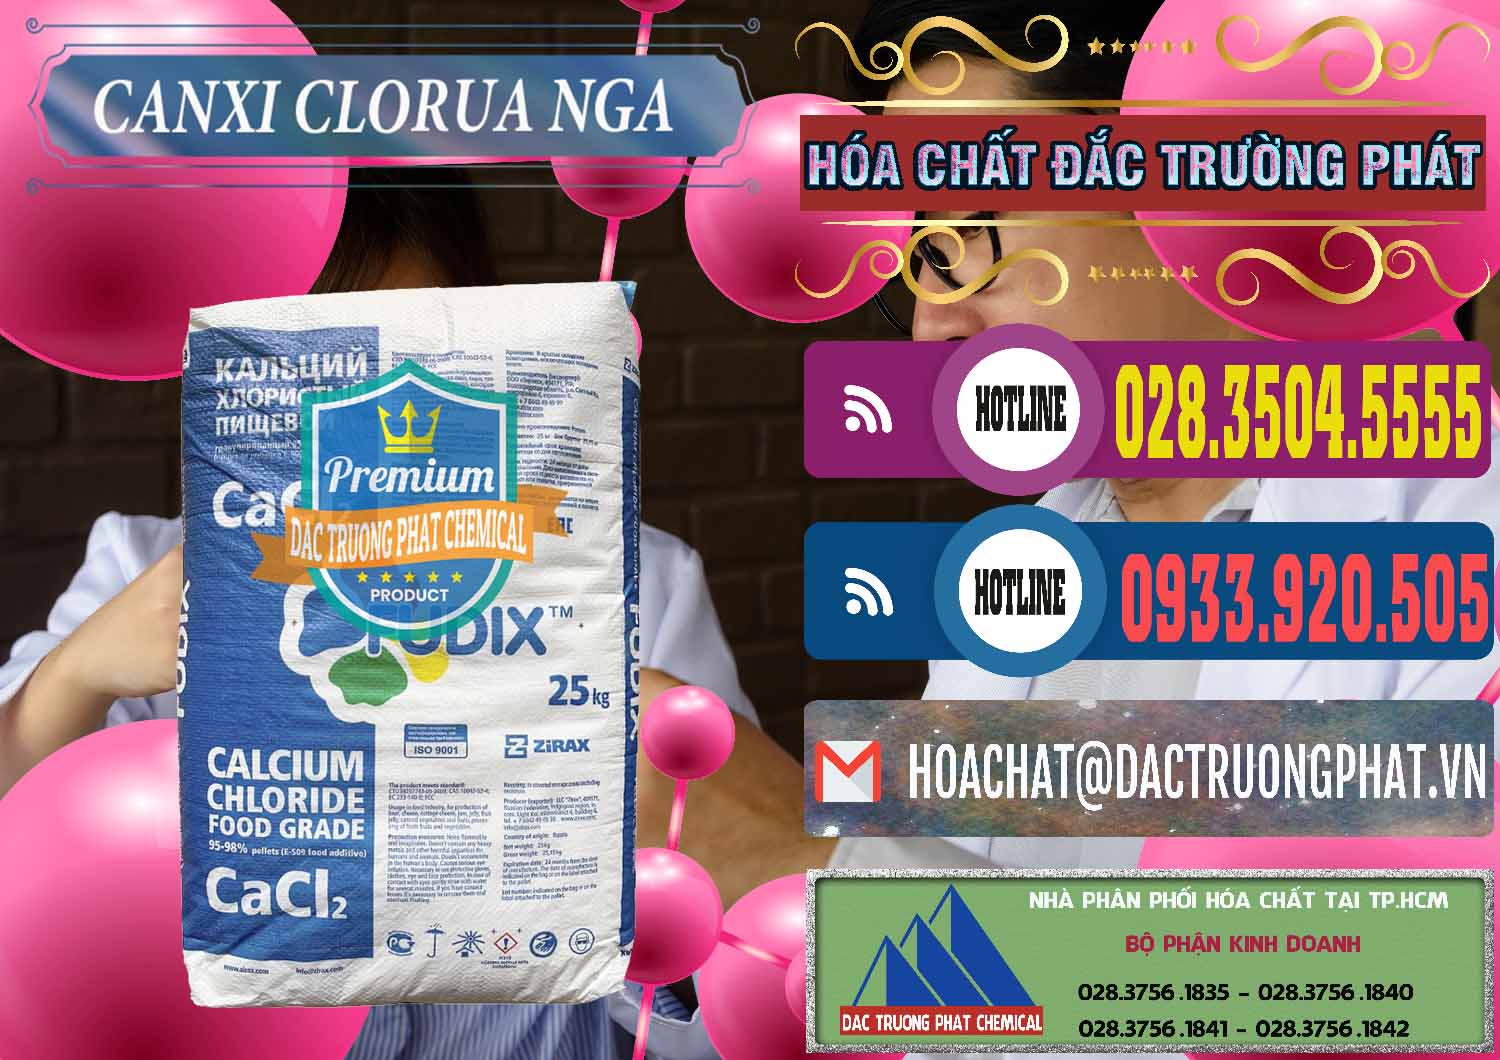 Nơi chuyên nhập khẩu & bán CaCl2 – Canxi Clorua Nga Russia - 0430 - Nơi cung cấp & nhập khẩu hóa chất tại TP.HCM - muabanhoachat.com.vn